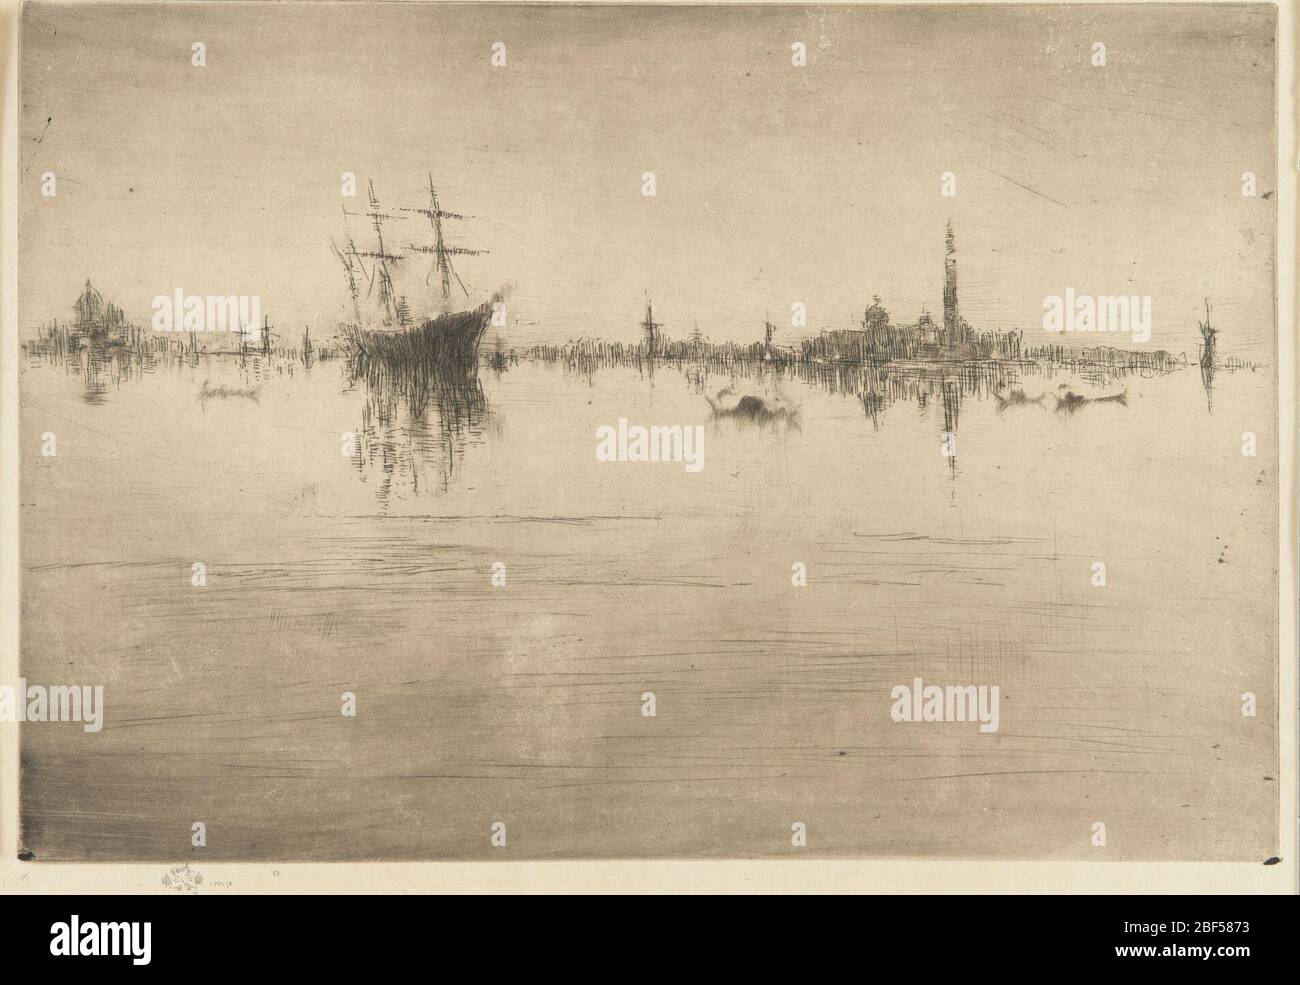 (Künstler) James McNeill Whistler; USA; 1879-1880; Ätzung und Trockenpunkt auf Papier; H x B: 26.6 x 18.7 cm (10 1/2 x 7 3/8 in); Geschenk von Charles lang freier Stockfoto